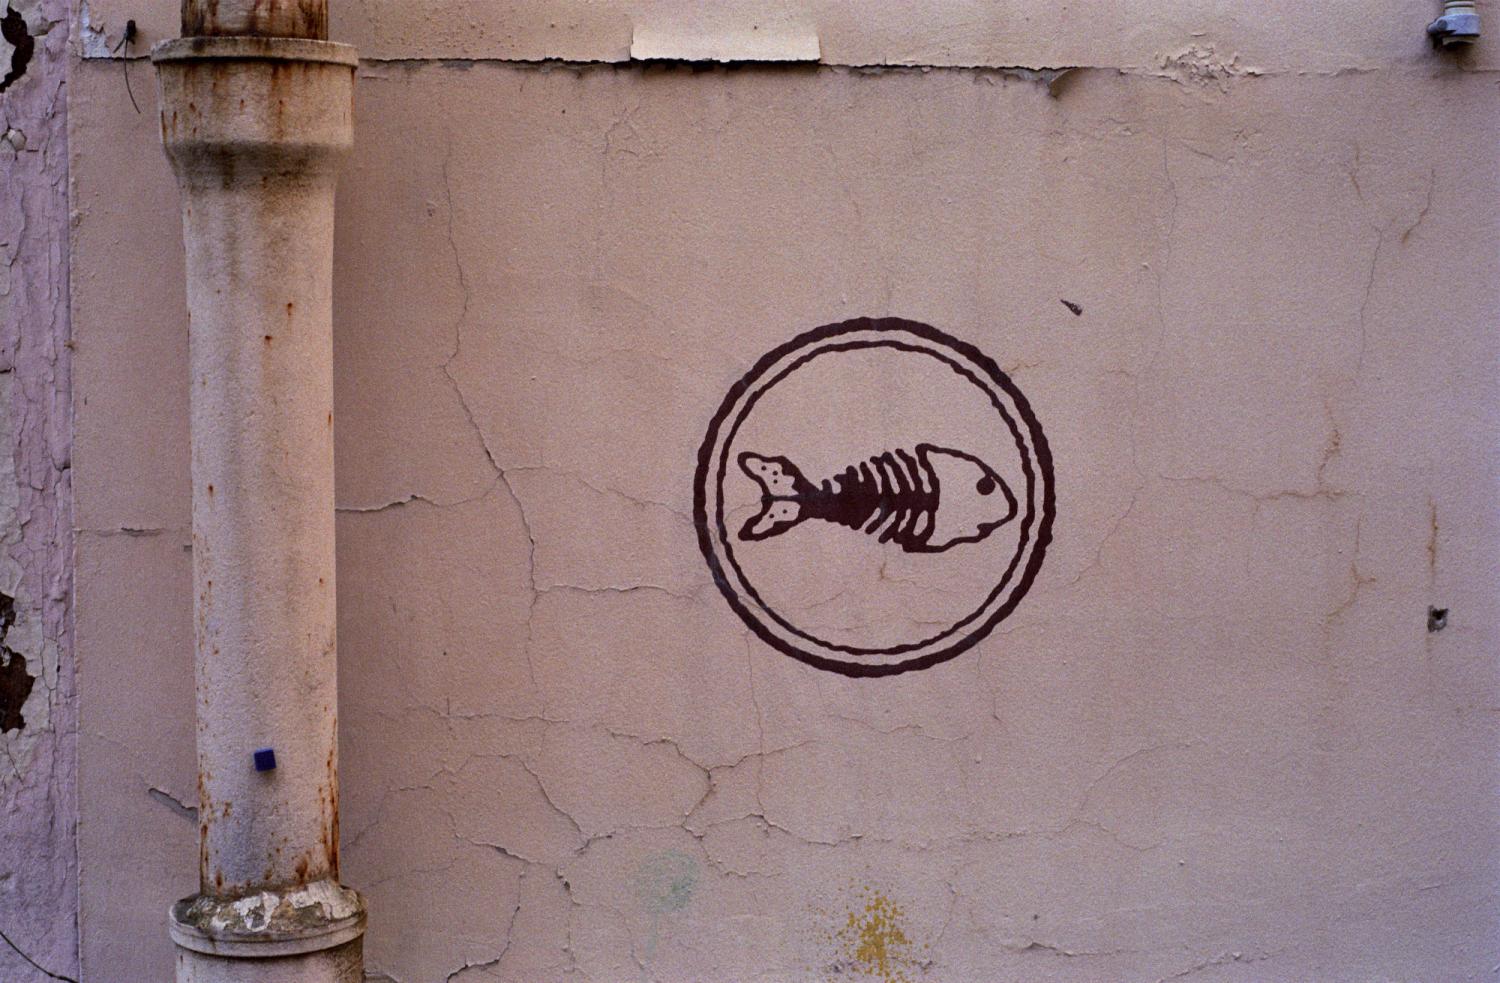 Graffiti sur un mur rose : une arête de poisson dans un cercle. Paris, printemps 2006.